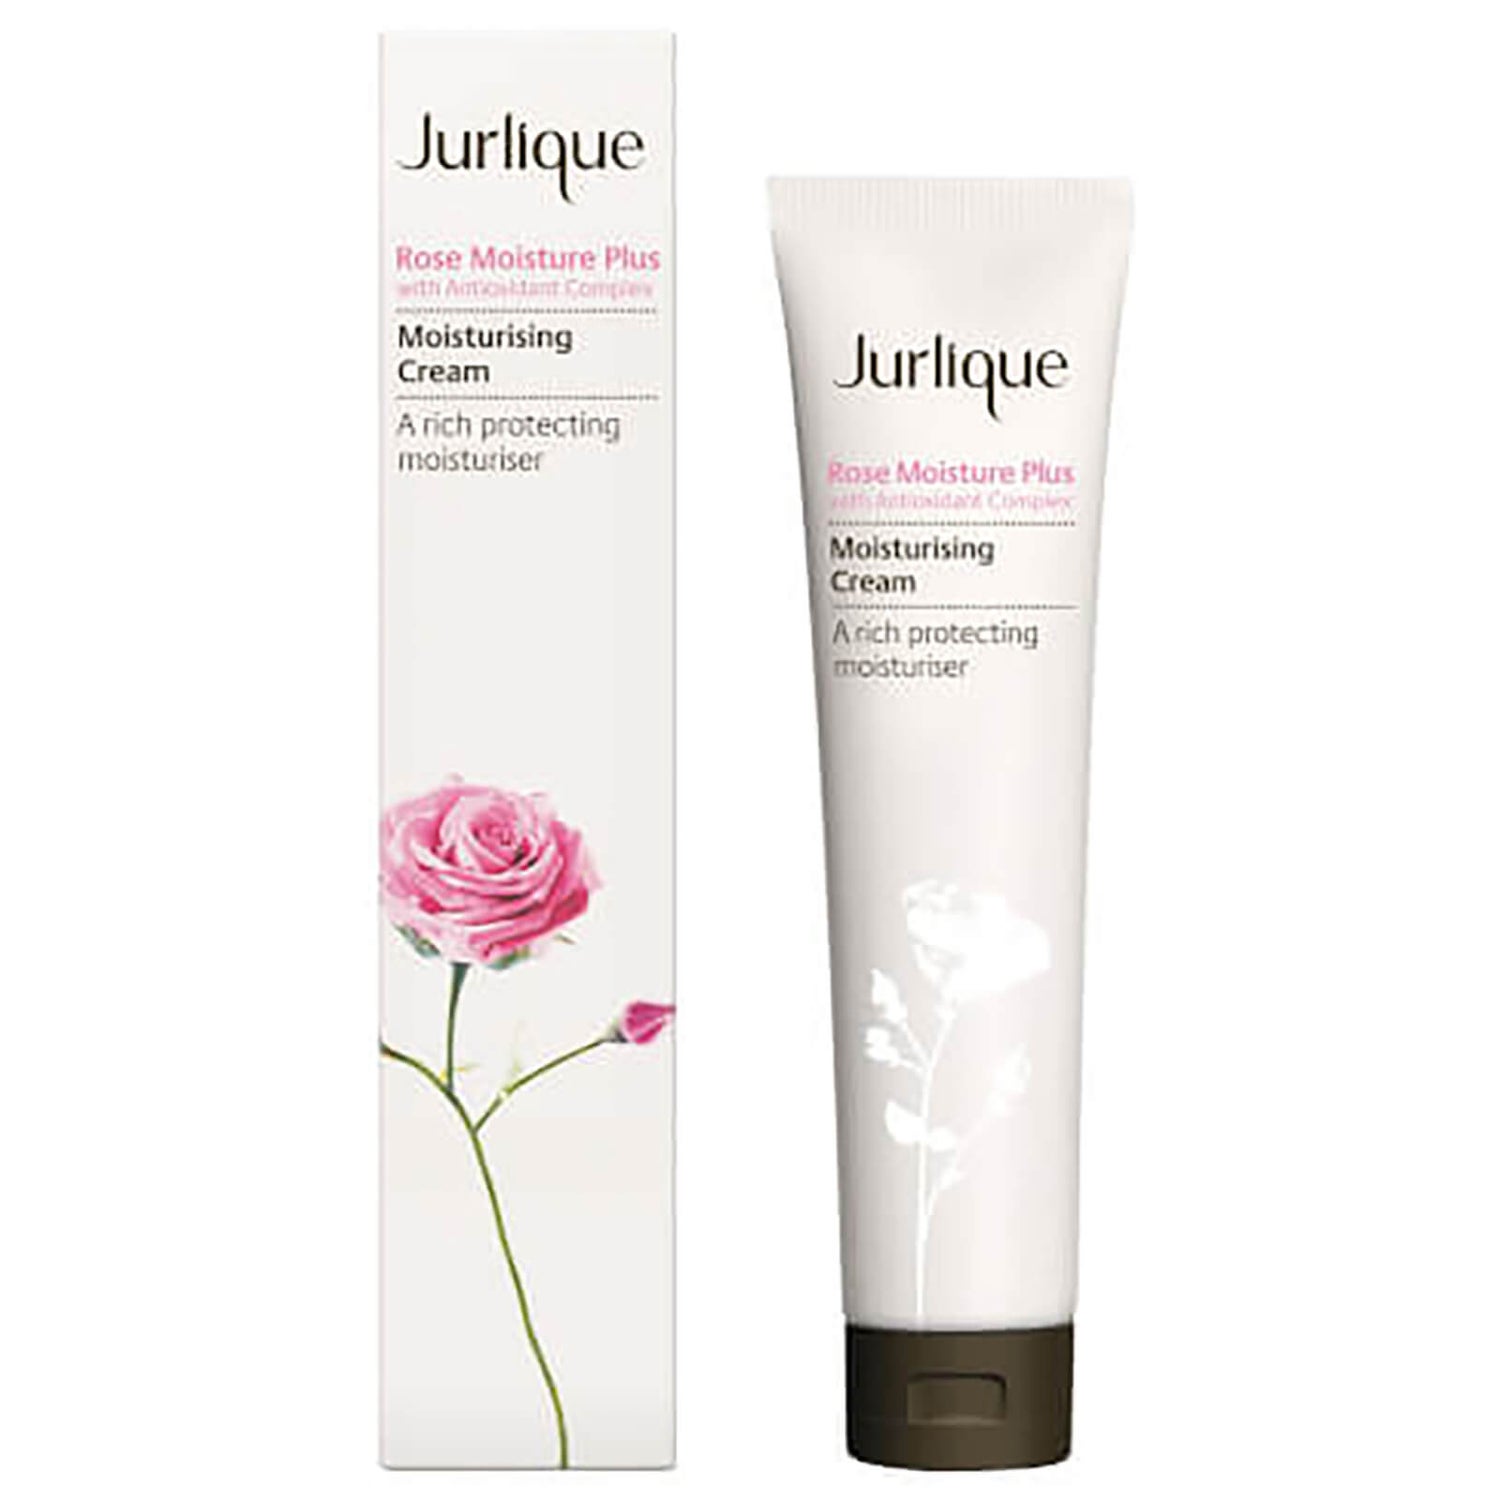 Jurlique Rose Moisture Plus with Antioxidant Complex Moisturising Cream (40ml)